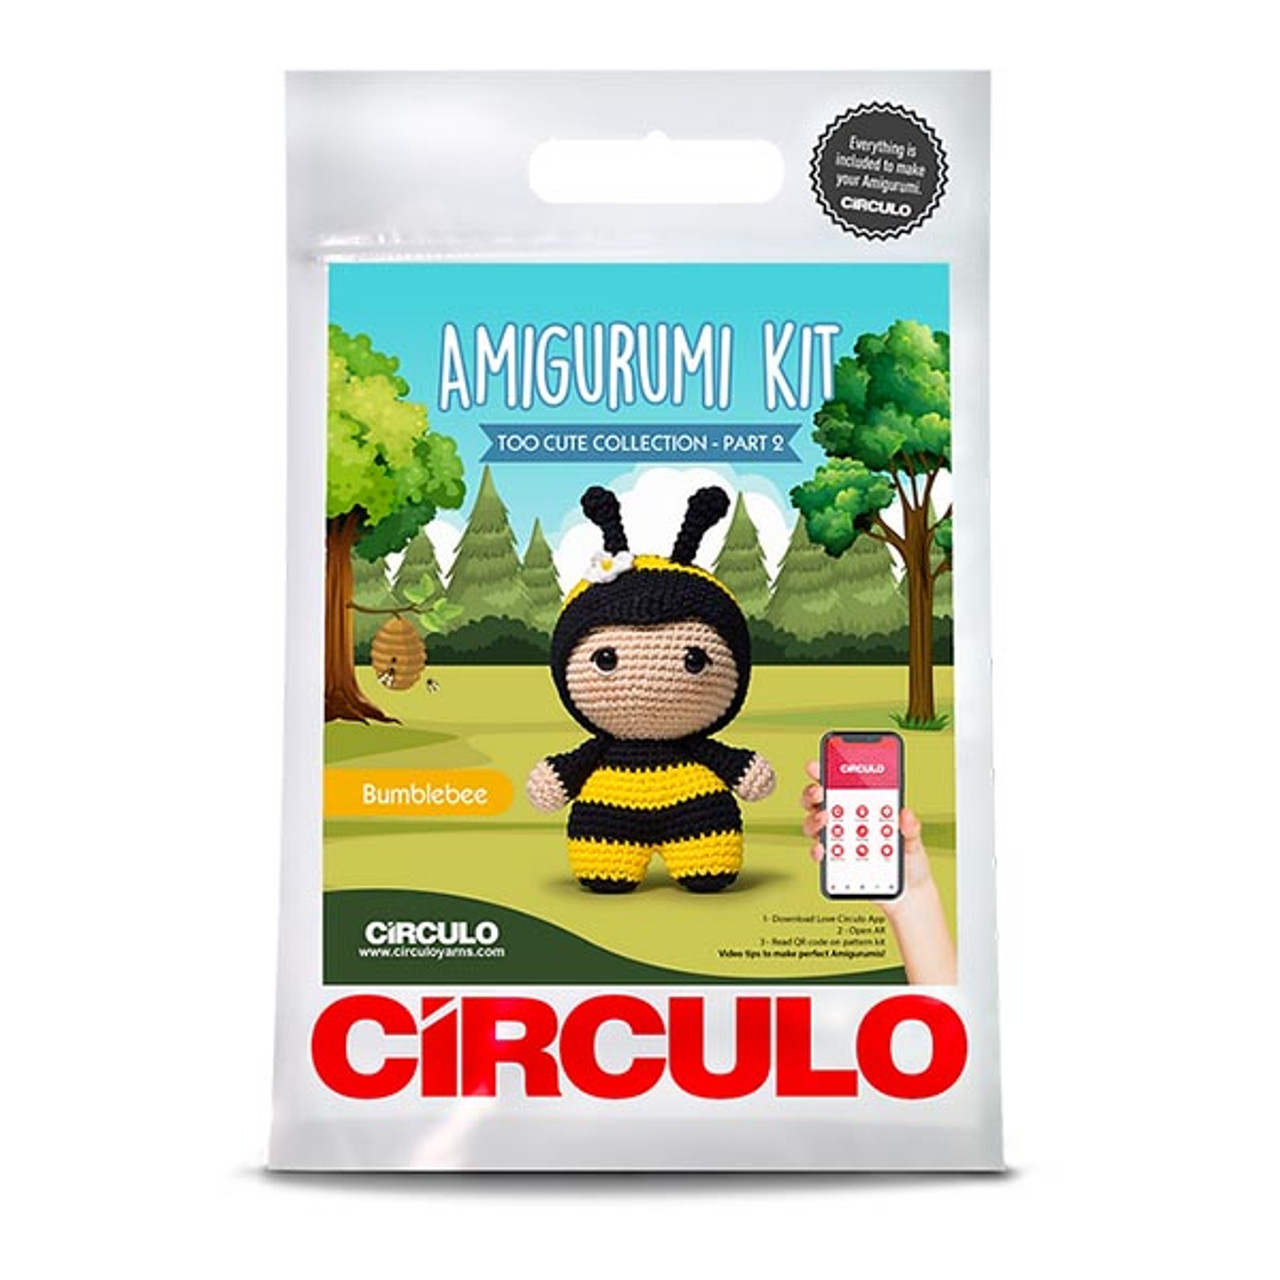 Circulo Amigurumi Kit - Bumblebee